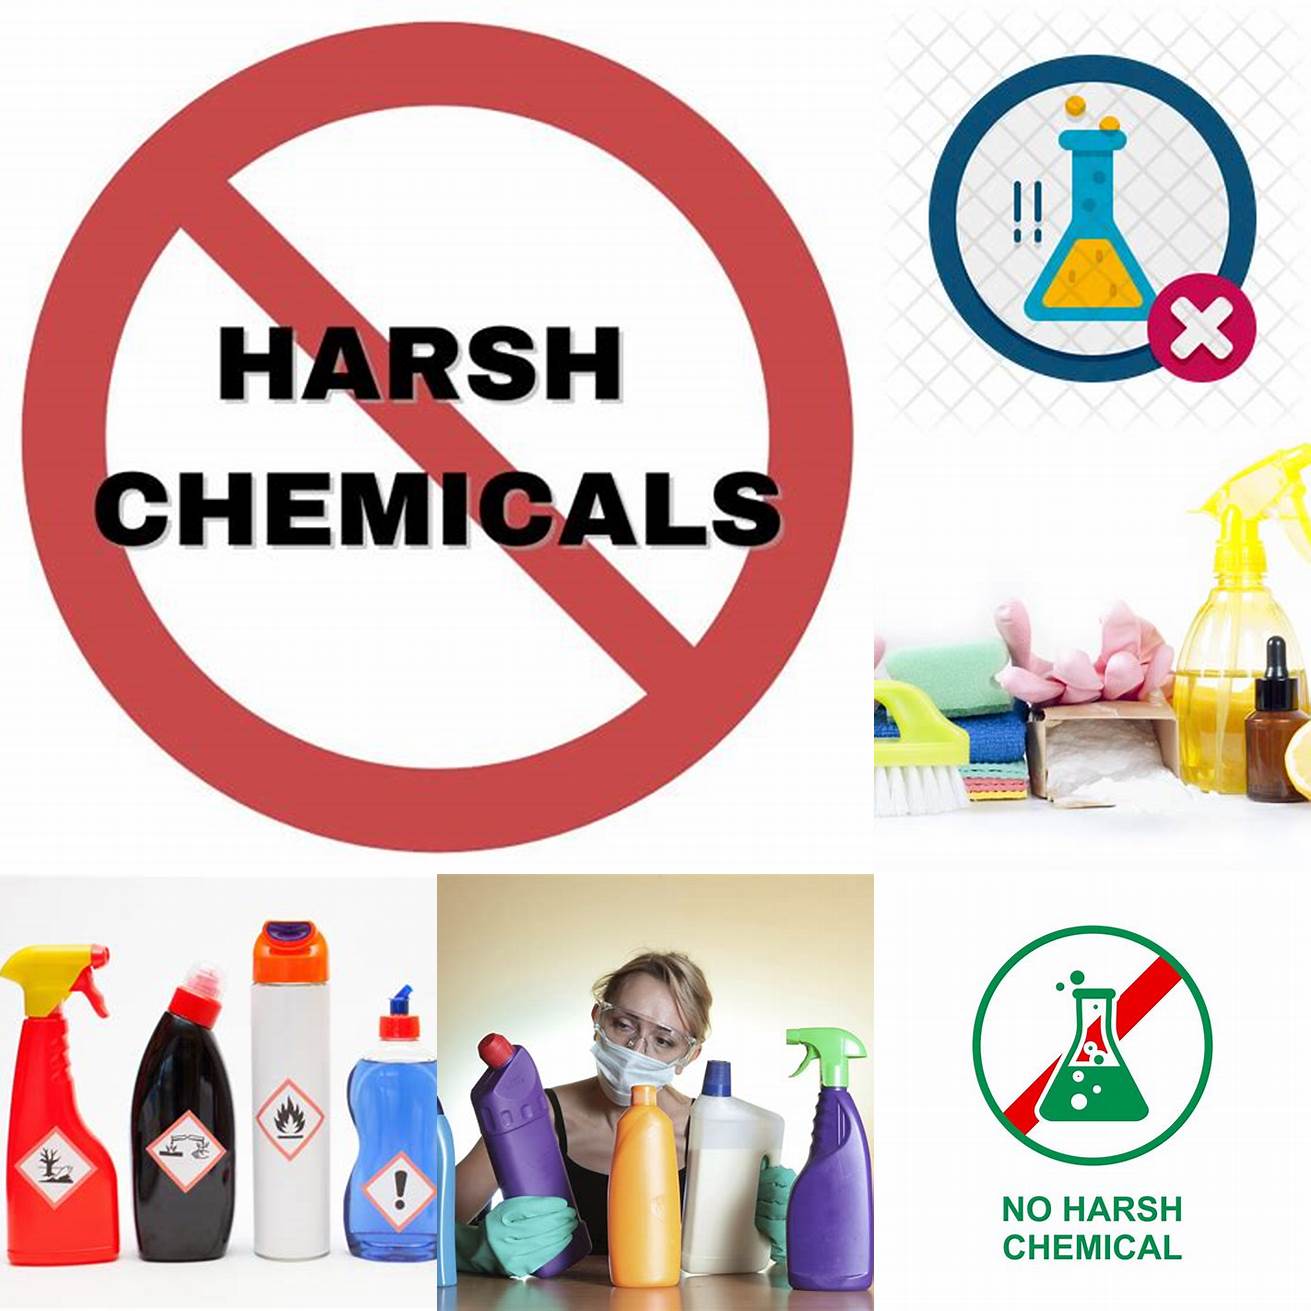 Avoiding harsh chemicals